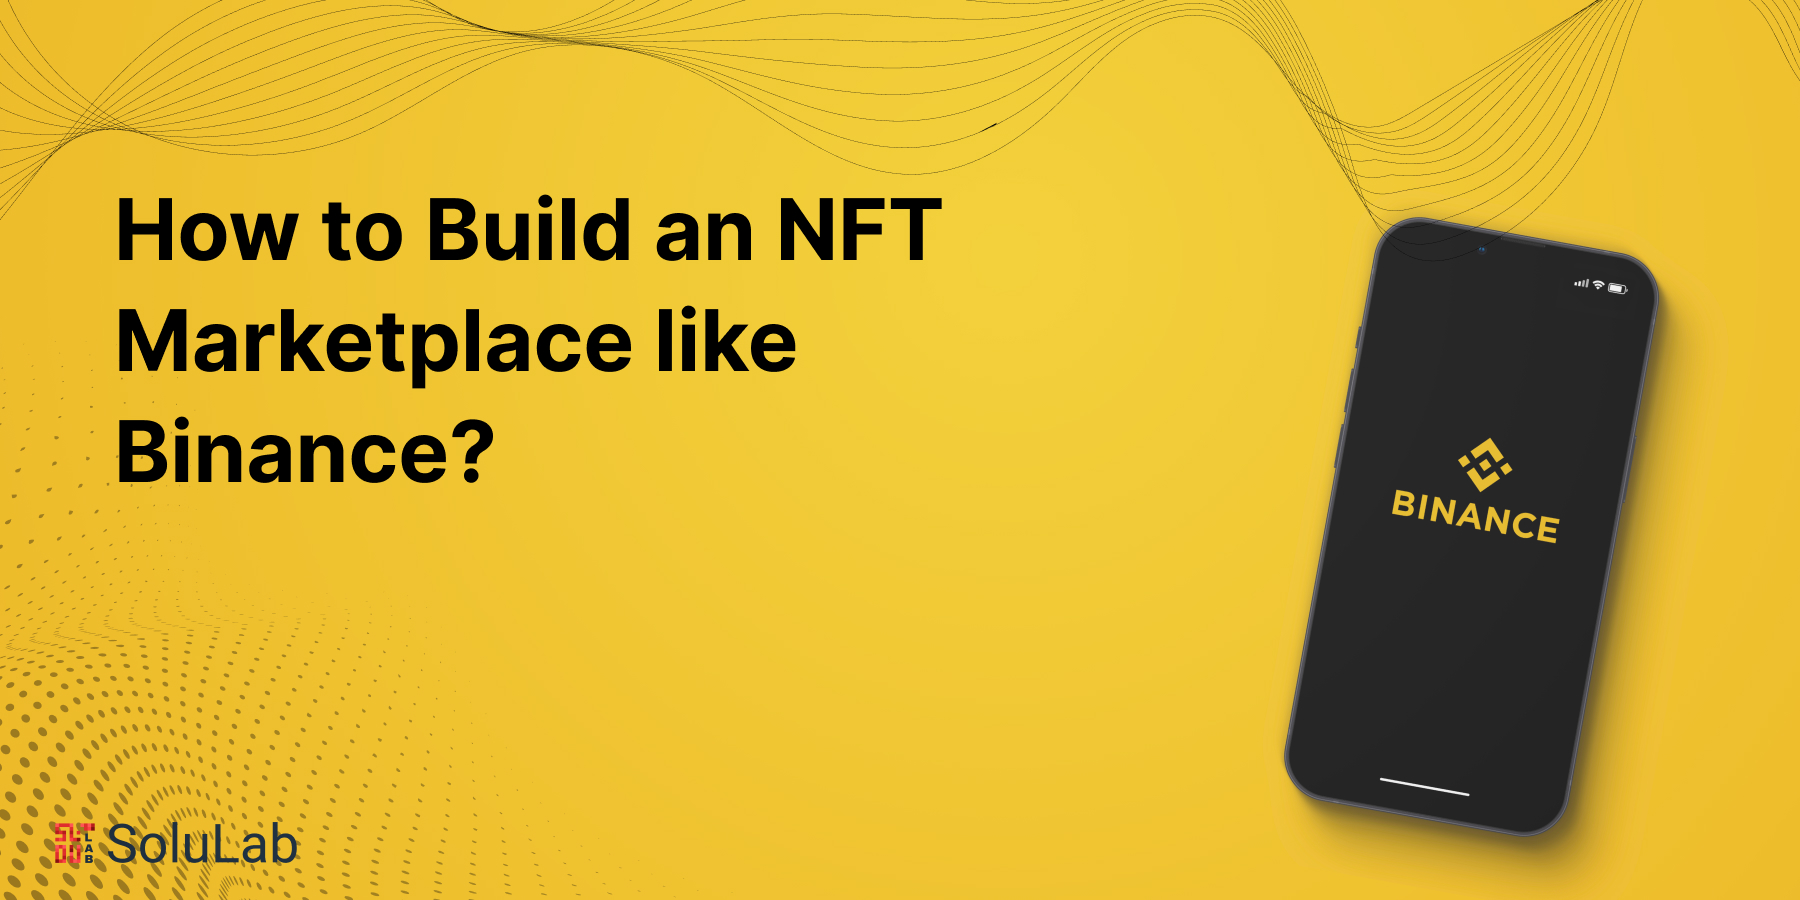 How to Build an NFT Marketplace like Binance?